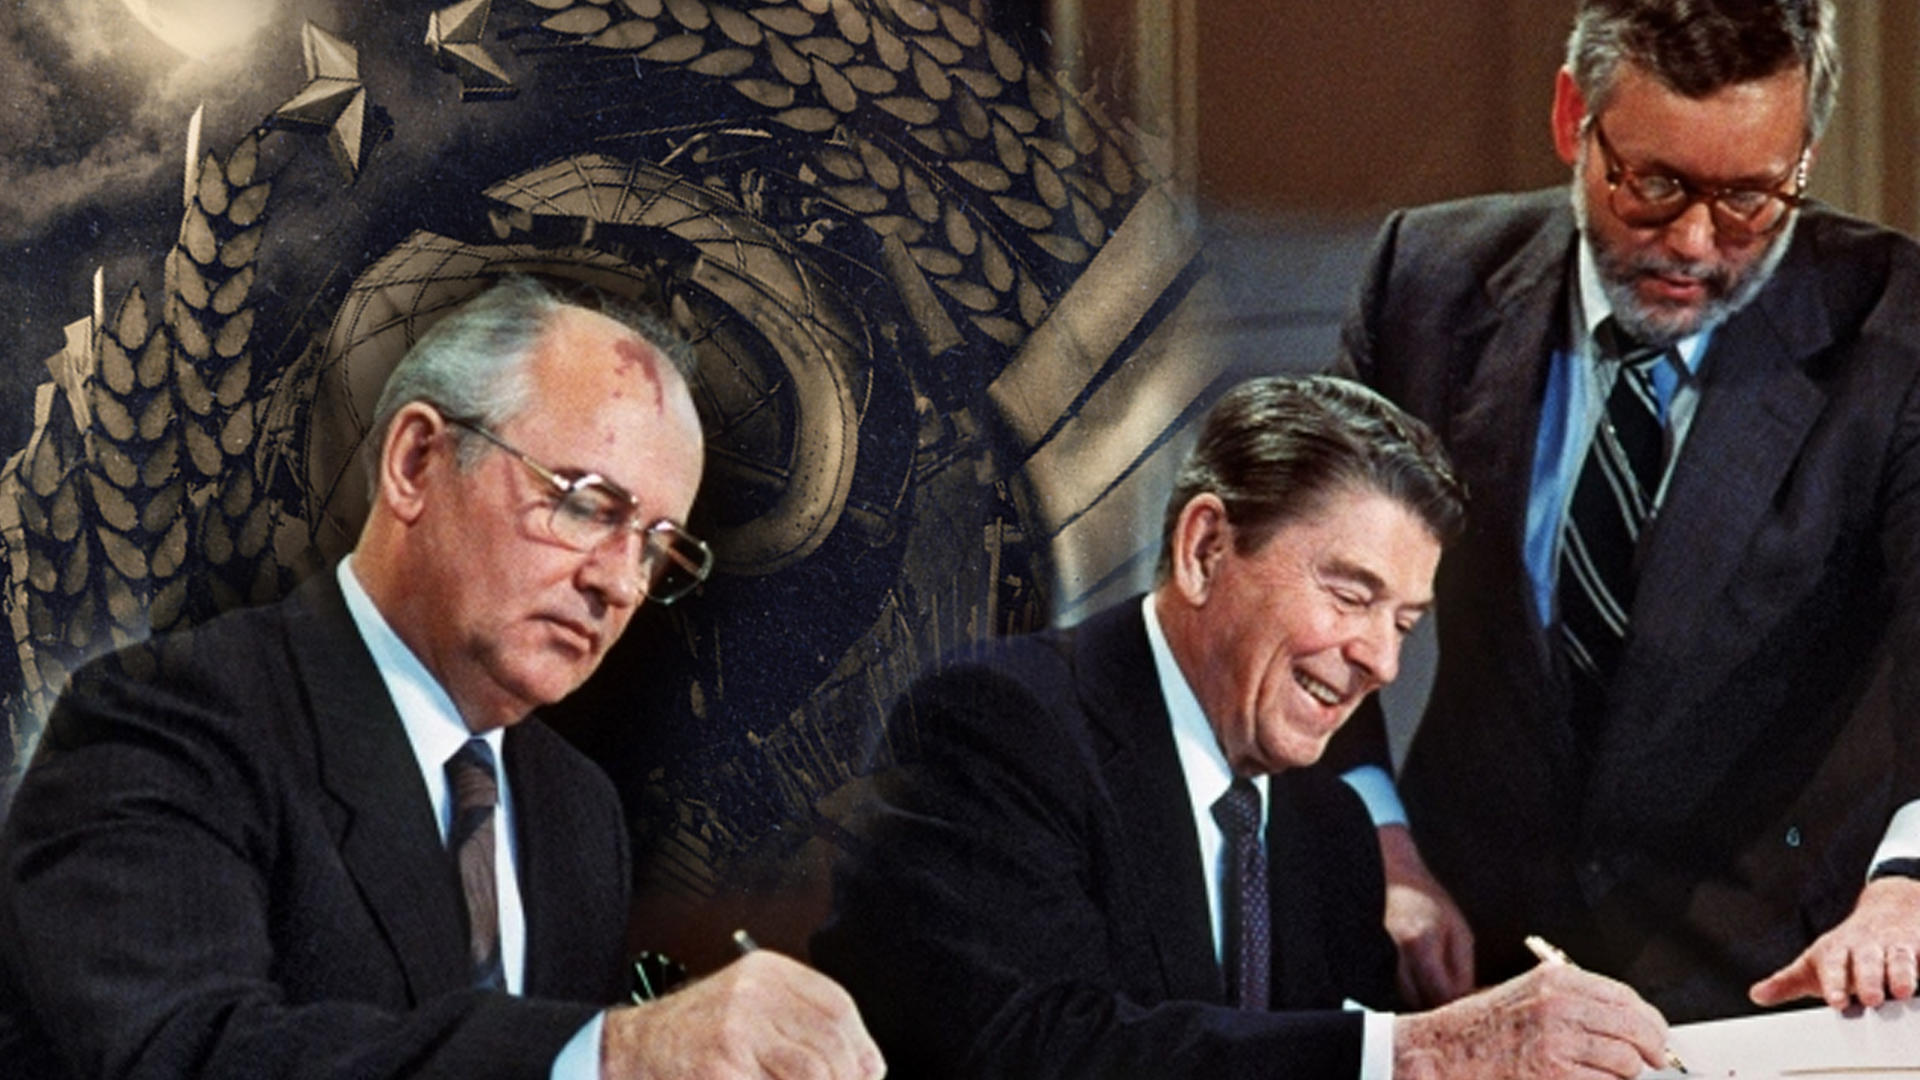 Выход сша из договора по про. Горбачев Рейган 1987 ДРСМД. Рейган Горбачев Вашингтон 1987. В 1987 Рейган и Горбачев подписали. Договор о ликвидации ракет средней и меньшей дальности.